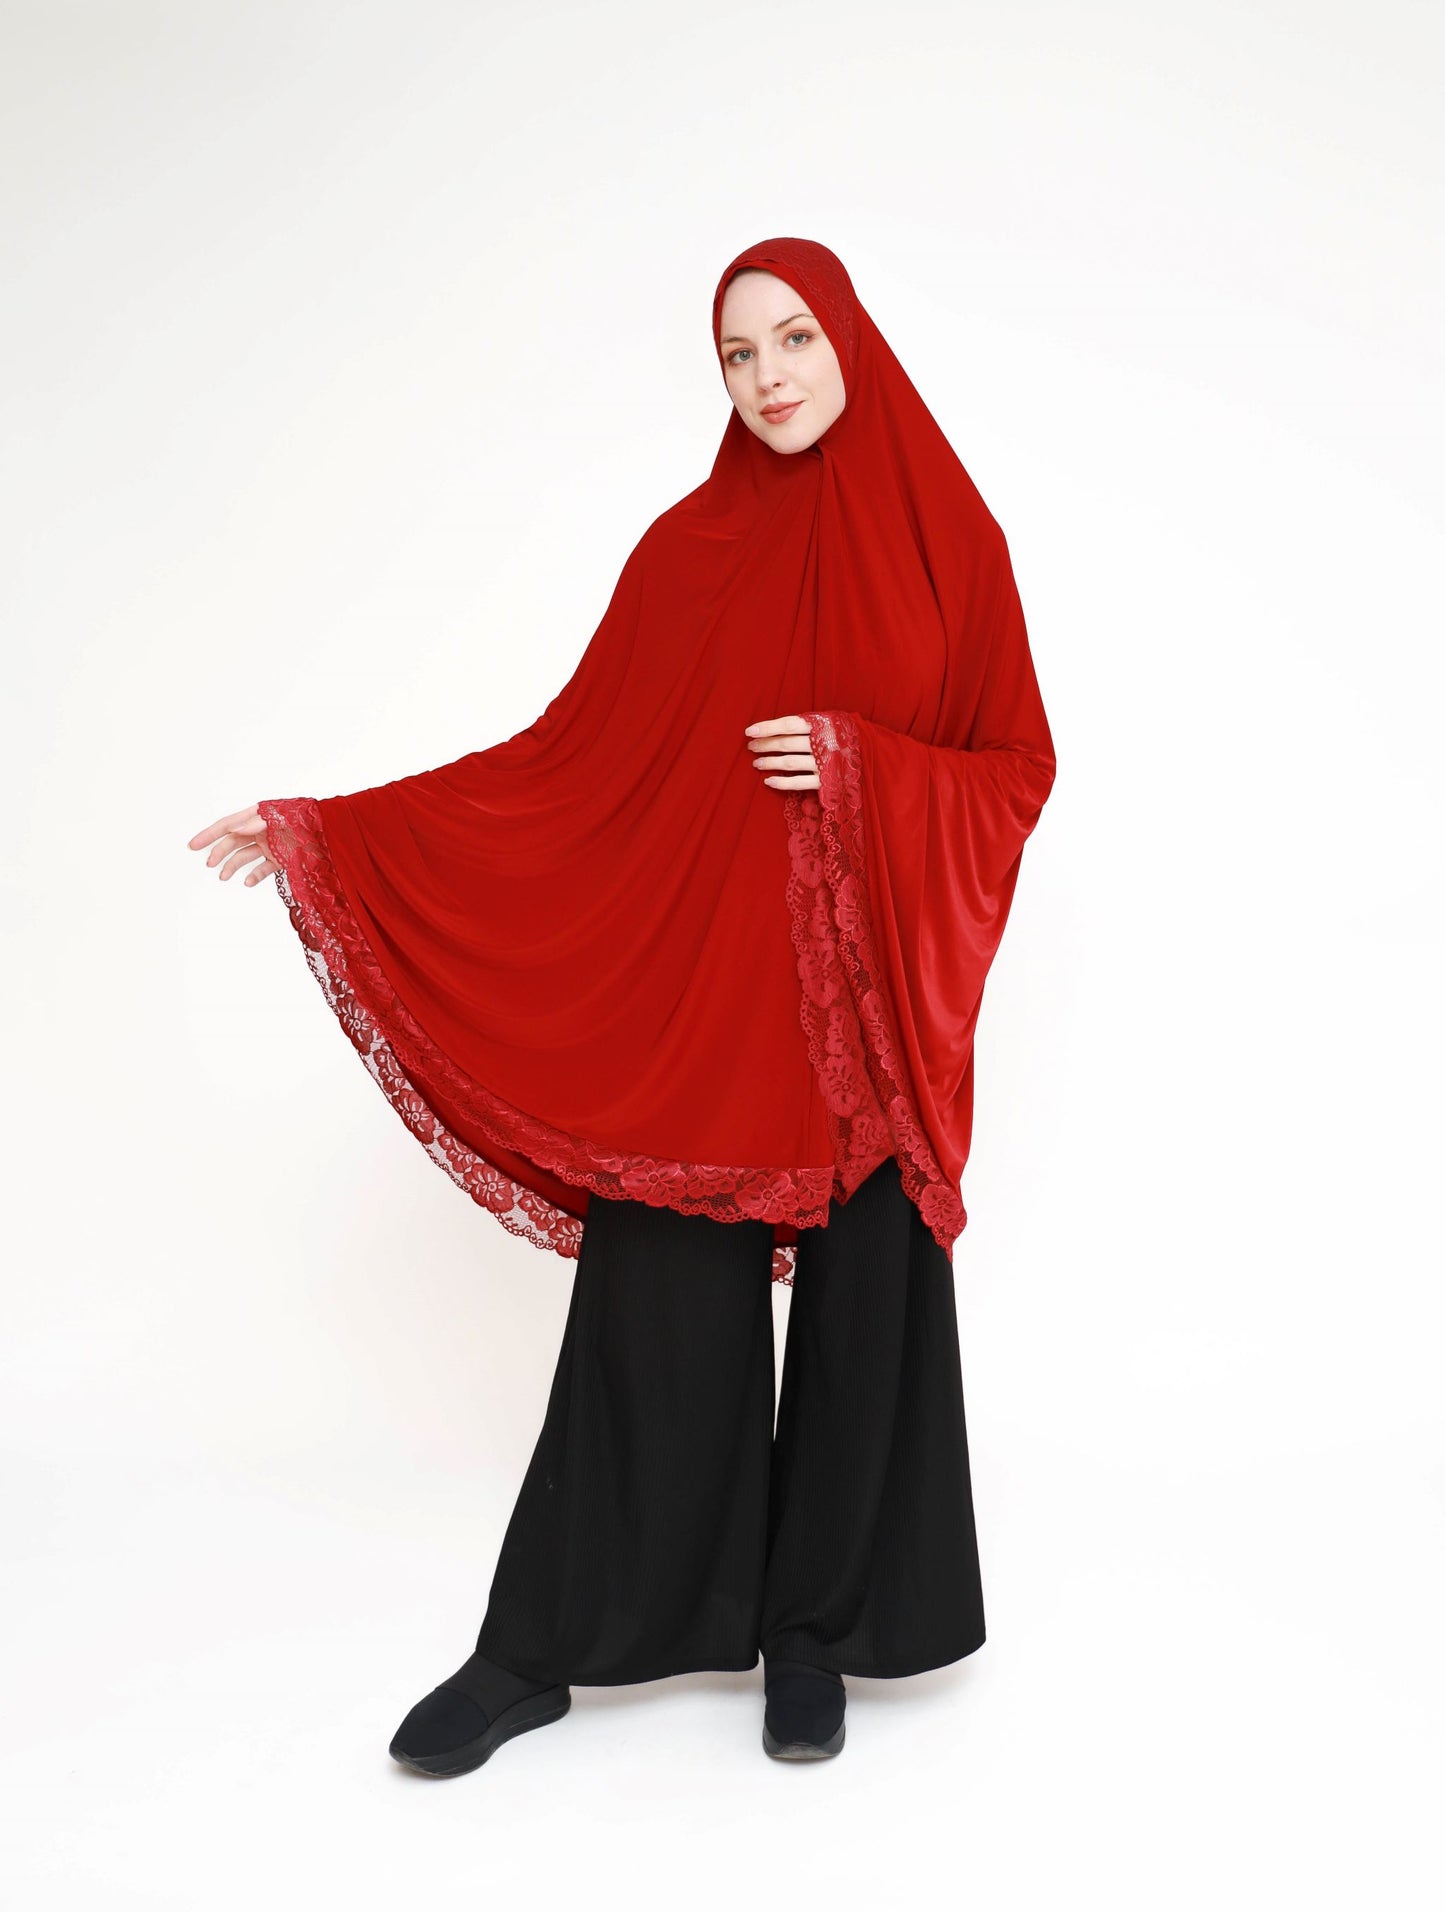 Lace praying hijabs